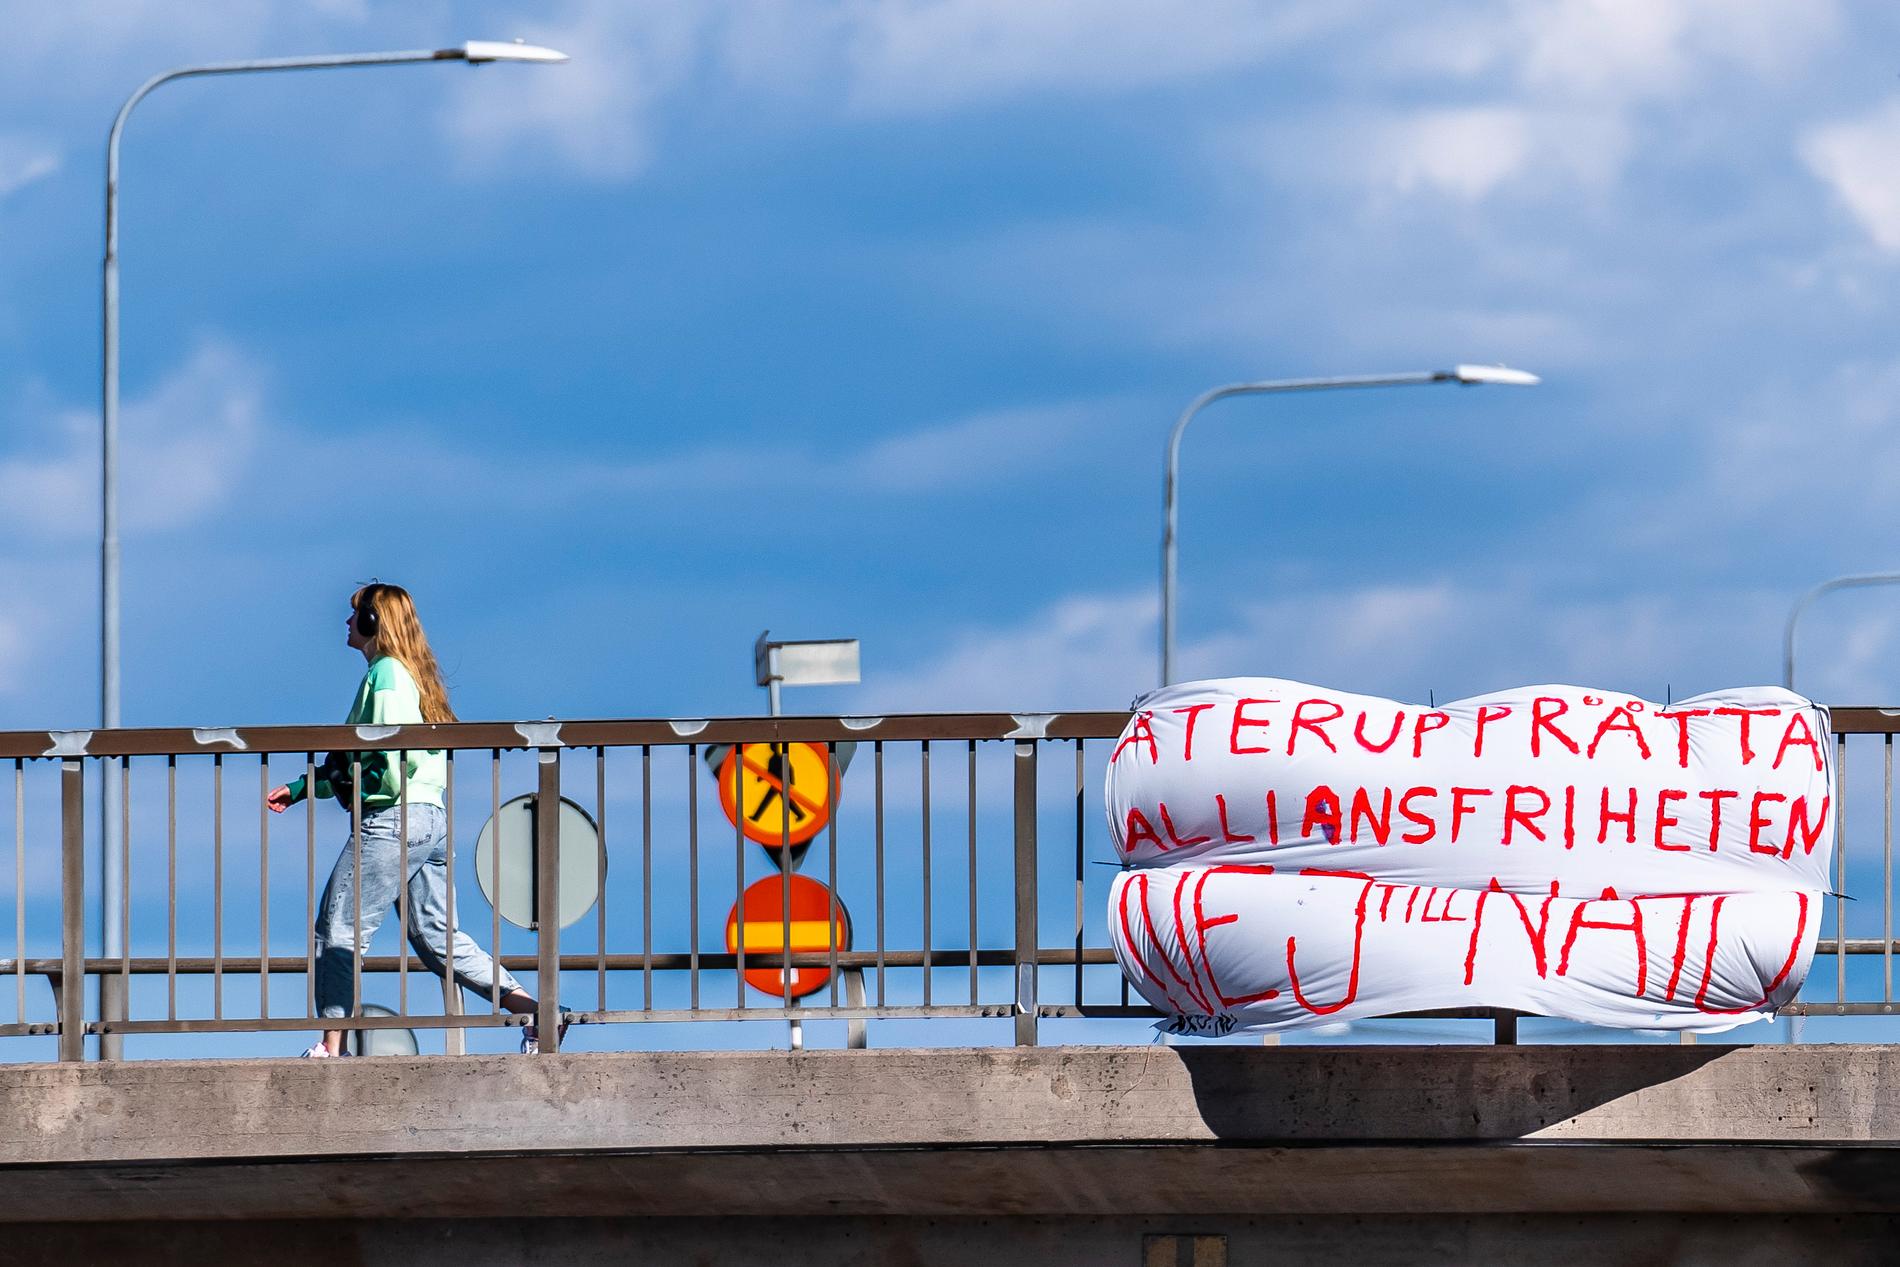 Ett lakan med texten "Återupprätta alliansfriheten, säg nej till Nato" har hängts upp vid riksväg 73 i höjd med Gullmarsplan i Stockholm.